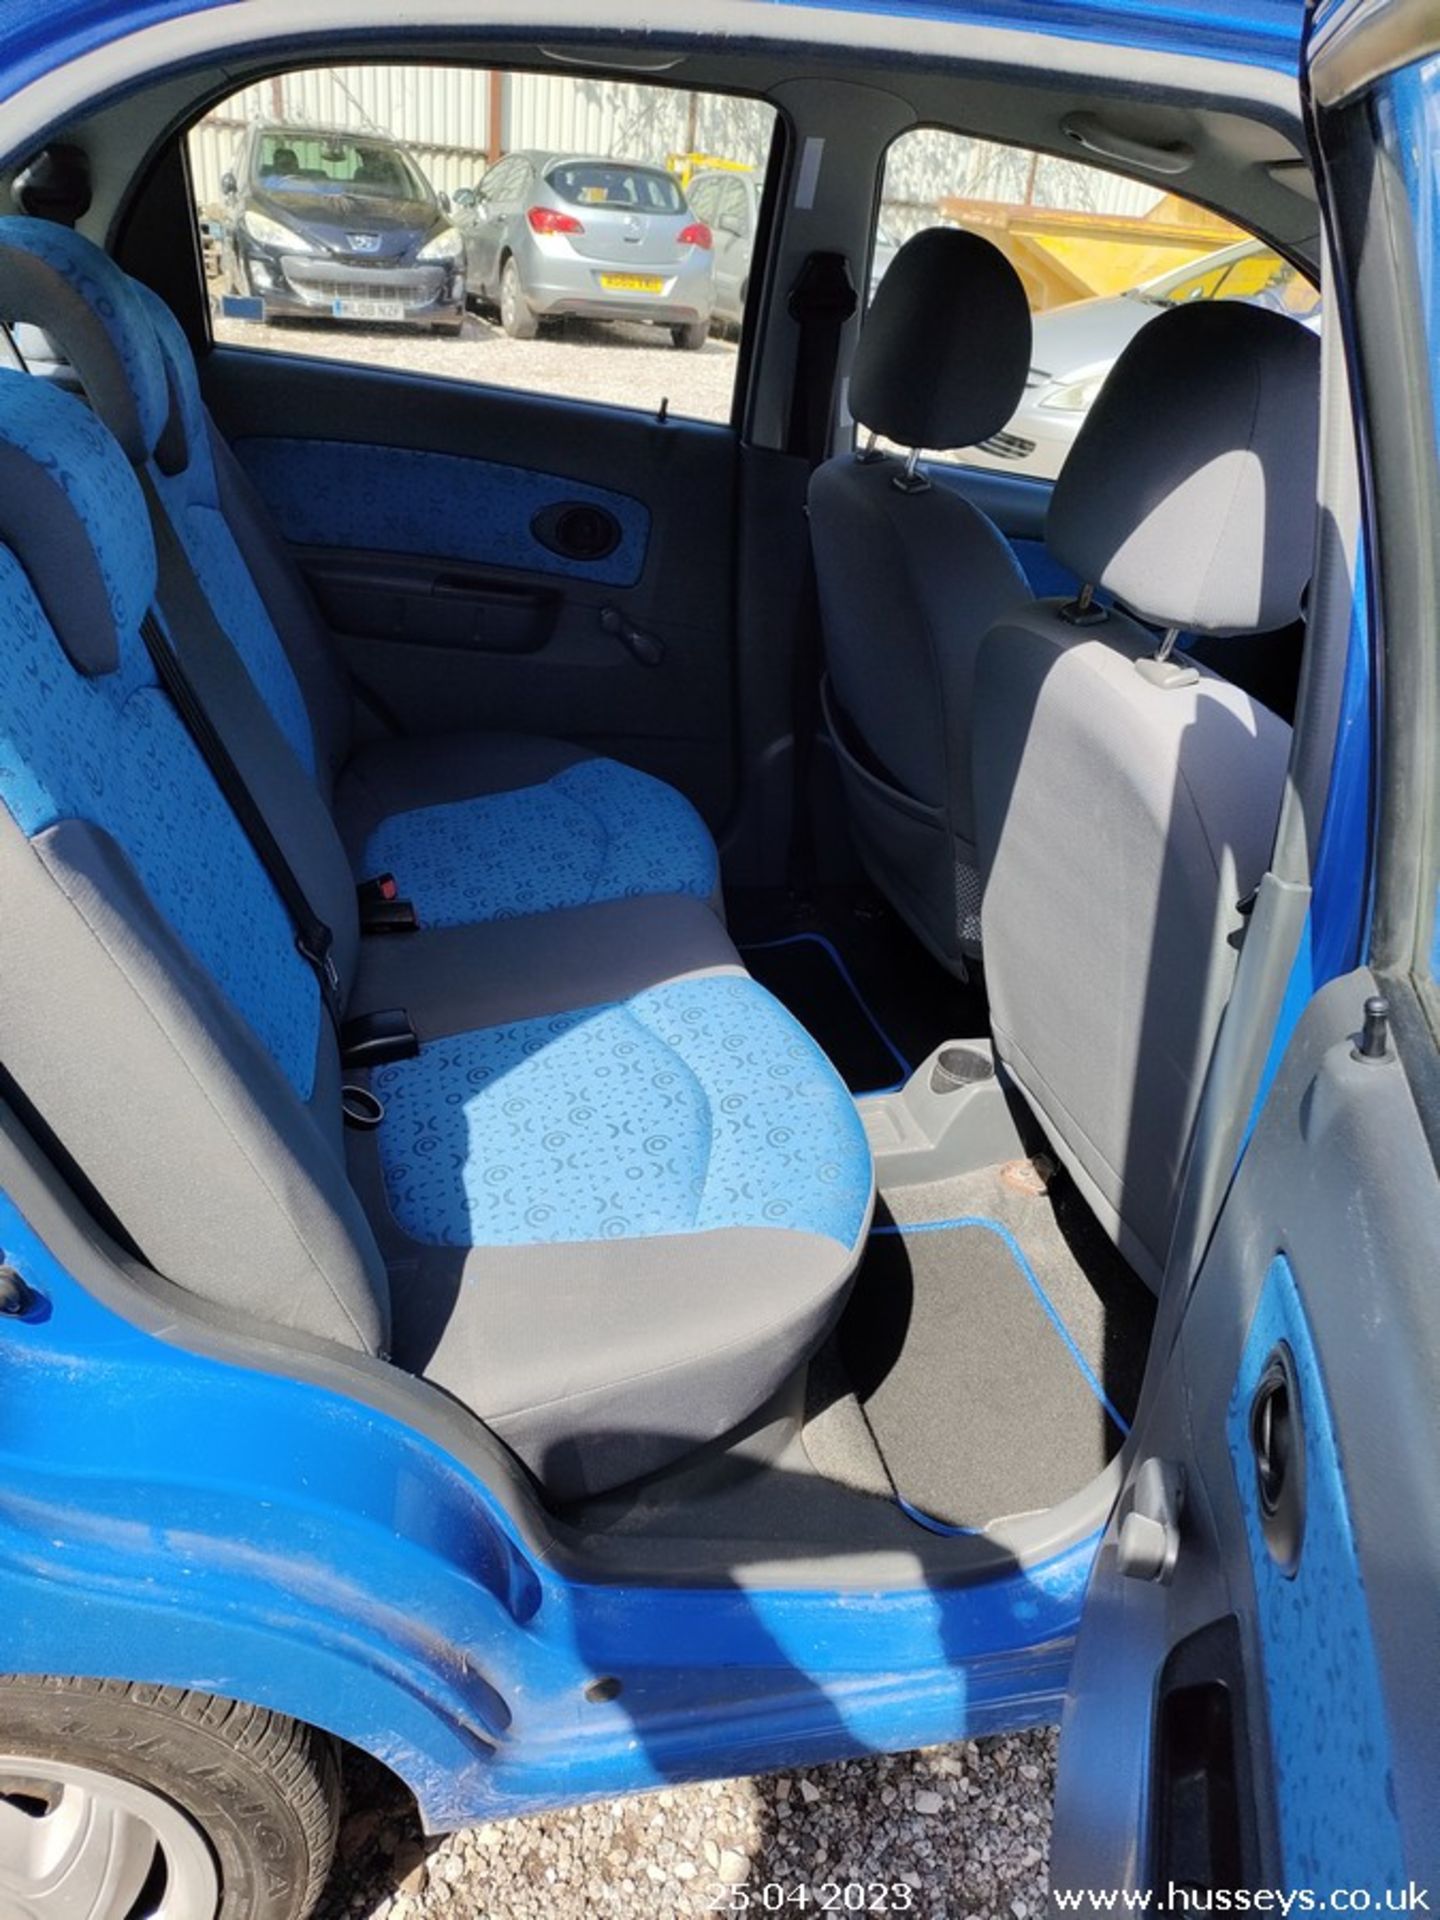 08/08 CHEVROLET MATIZ SE - 995cc 5dr Hatchback (Blue) - Image 31 of 34